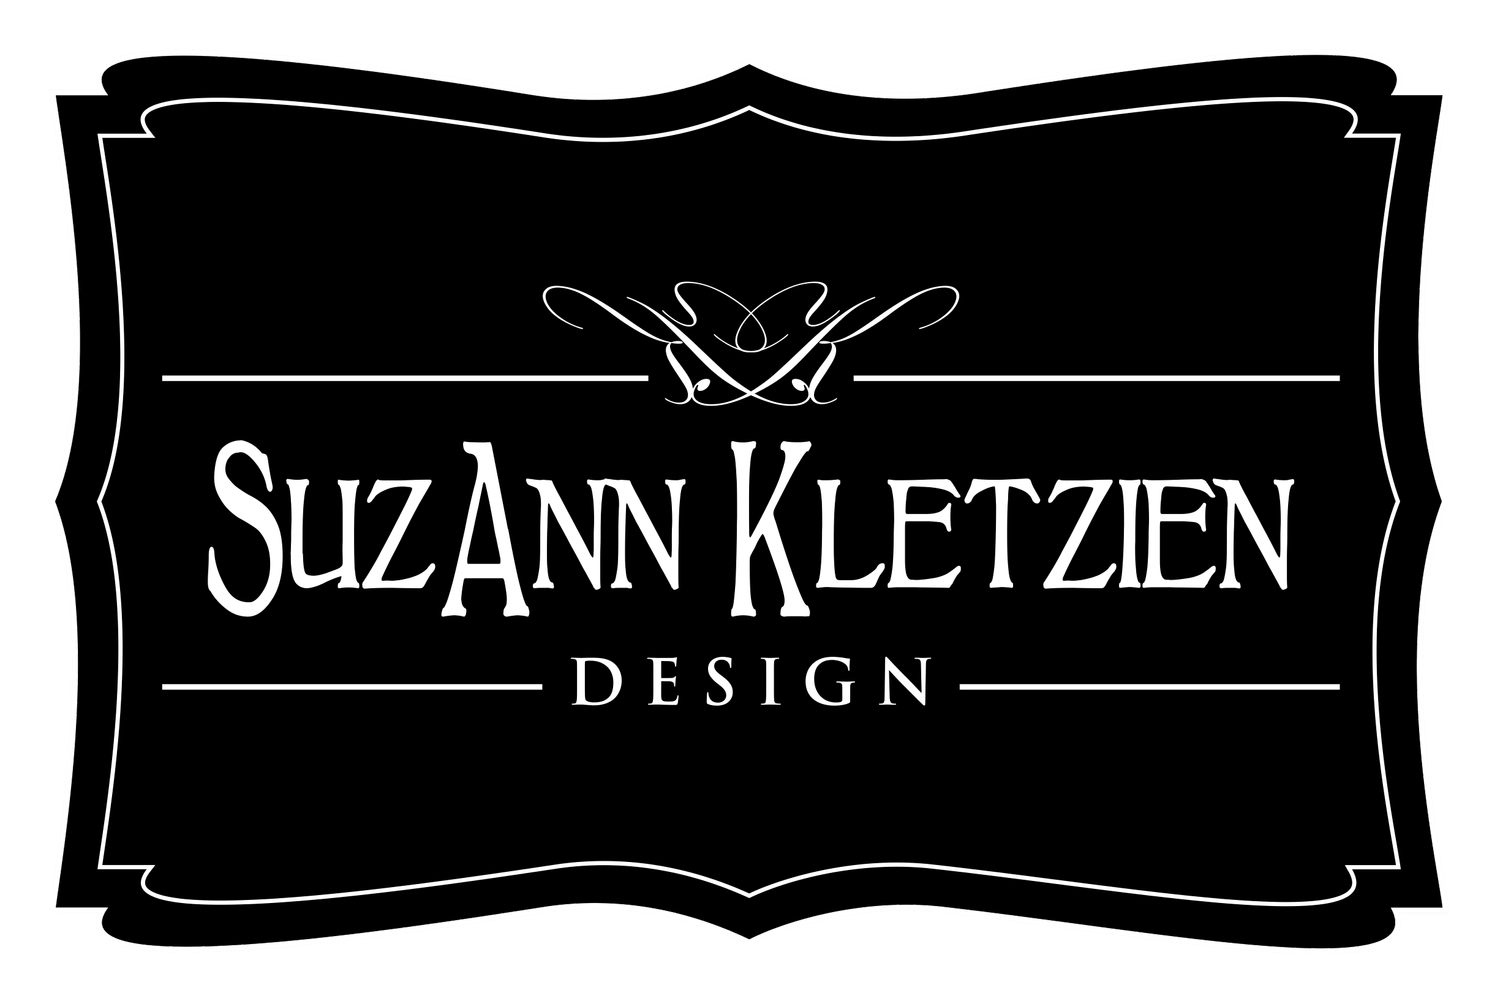 SuzAnn Kletzien Design